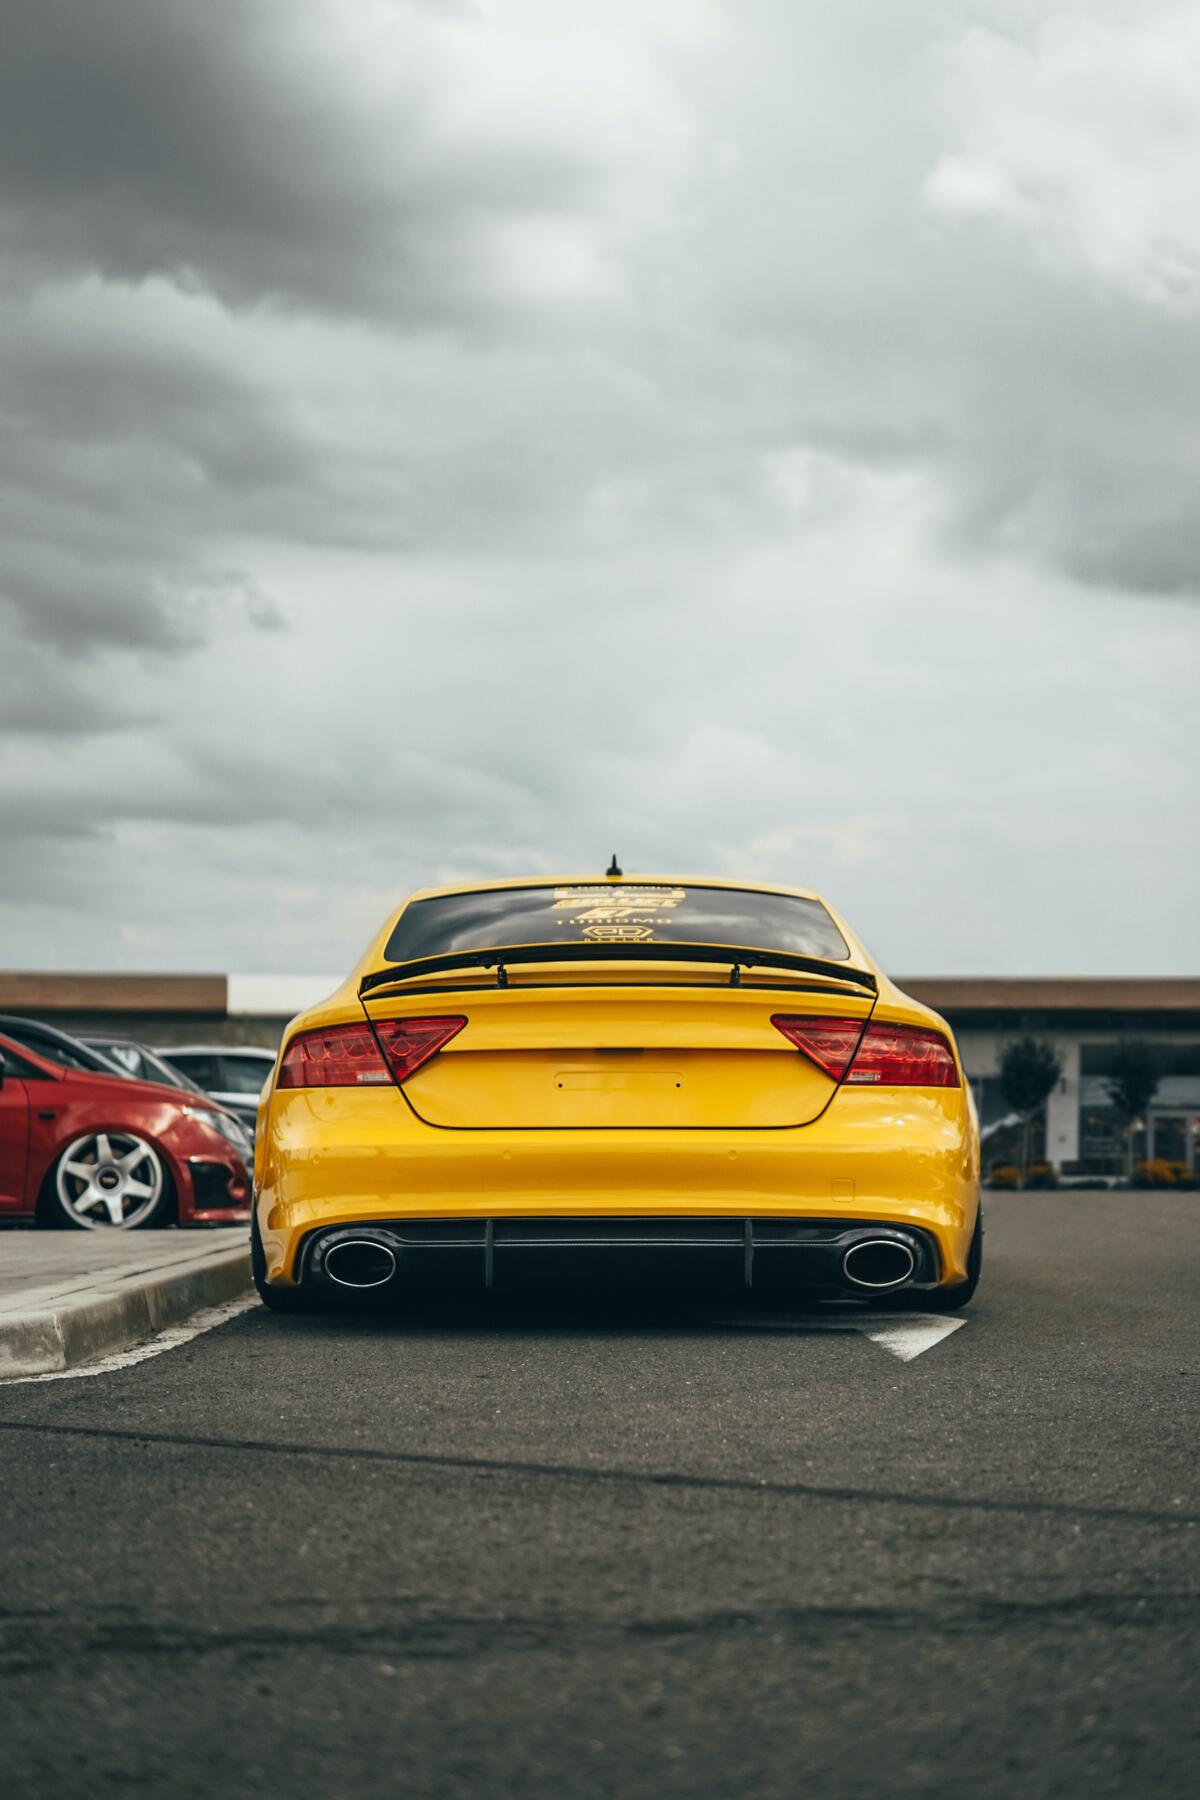 Yellow Audi rear view